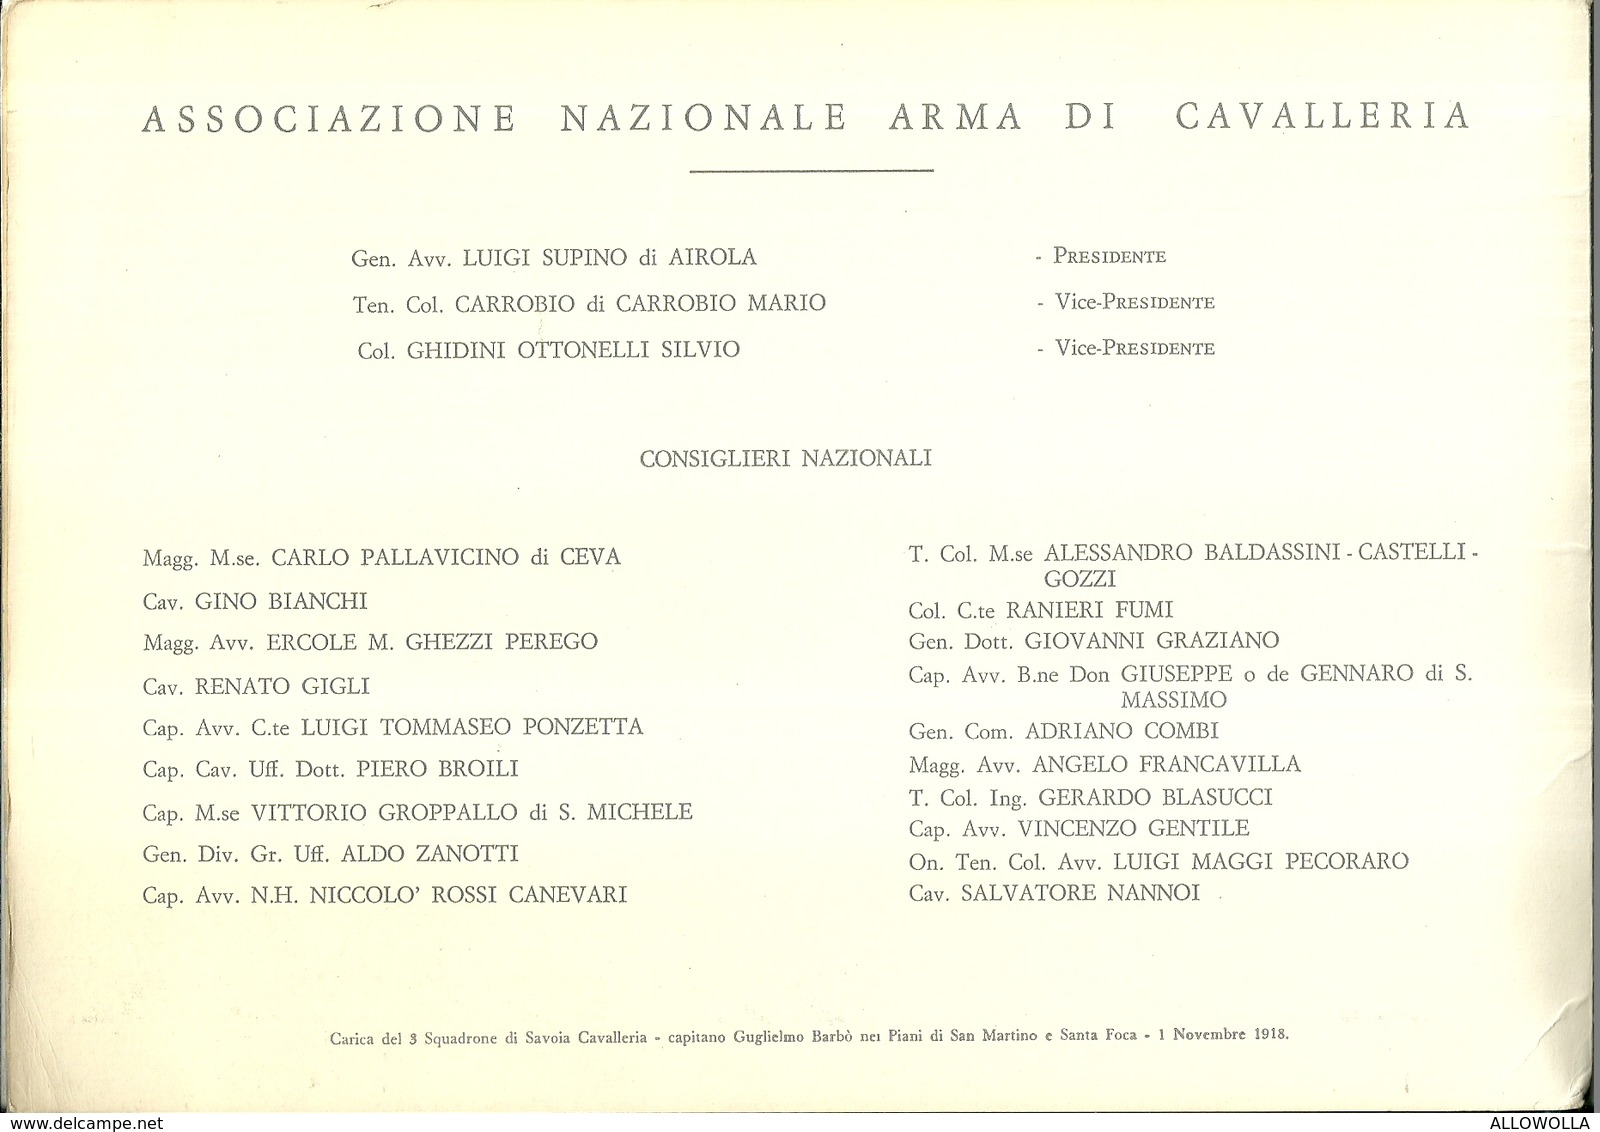 2277 "ASS.NAZ.ARMA DI CAVALLERIA-LA CAVALLERIA NEI BOLLETTINI DEL COM SUPR.-1/11-5/11/1918 - CALENDARIO 1968" ORIGINALE - Grand Format : 1961-70